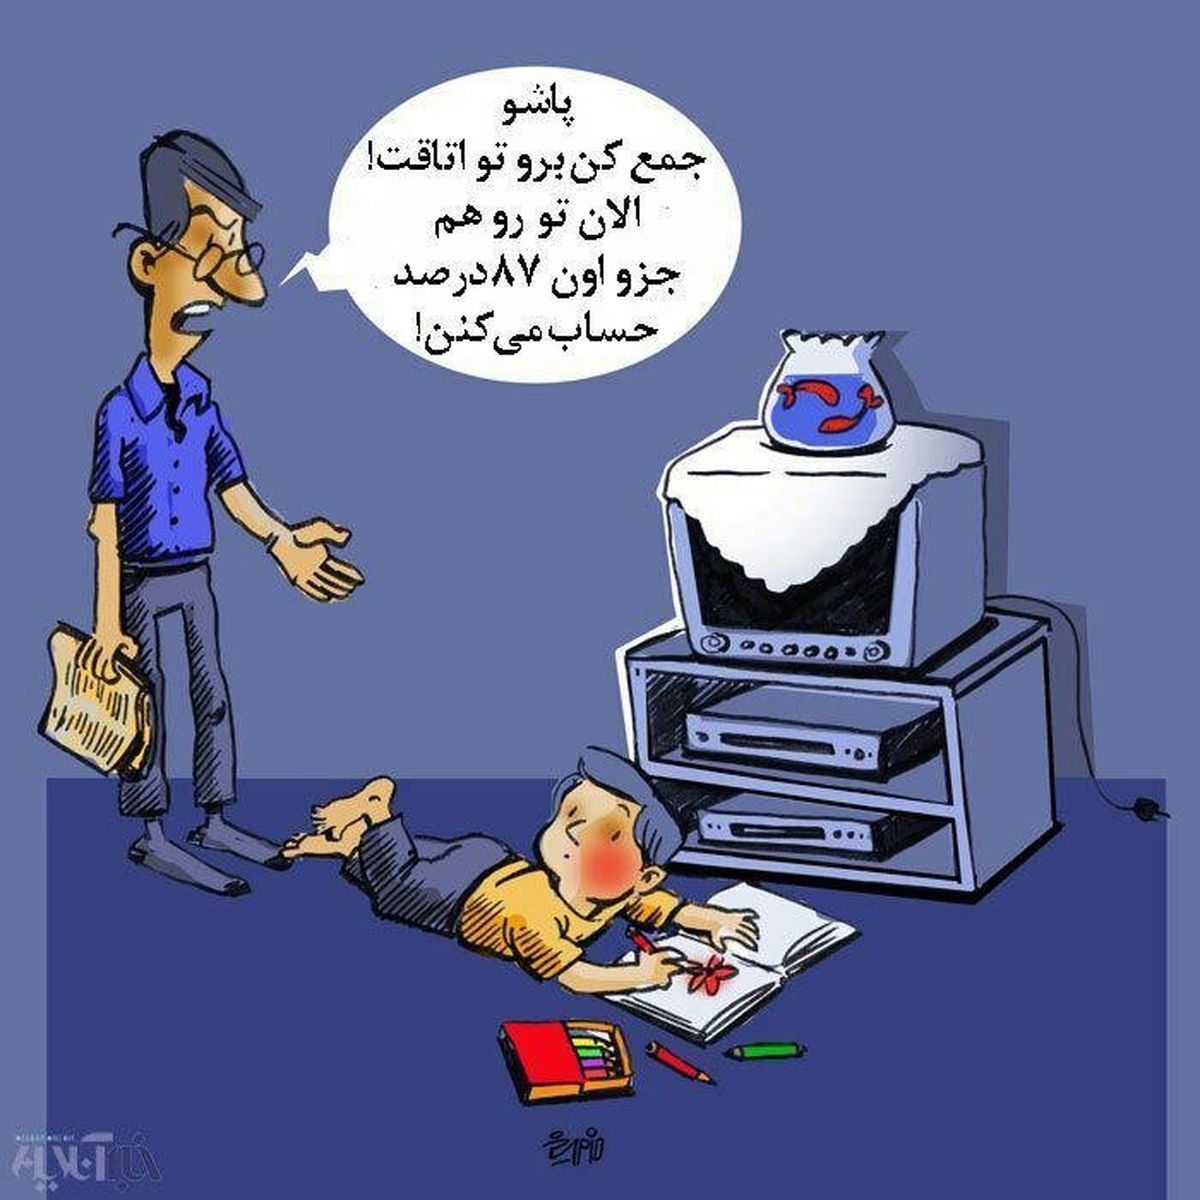 کاریکاتوری در پی انتشار آمار عجیب صداوسیما از میزان مخاطبانش